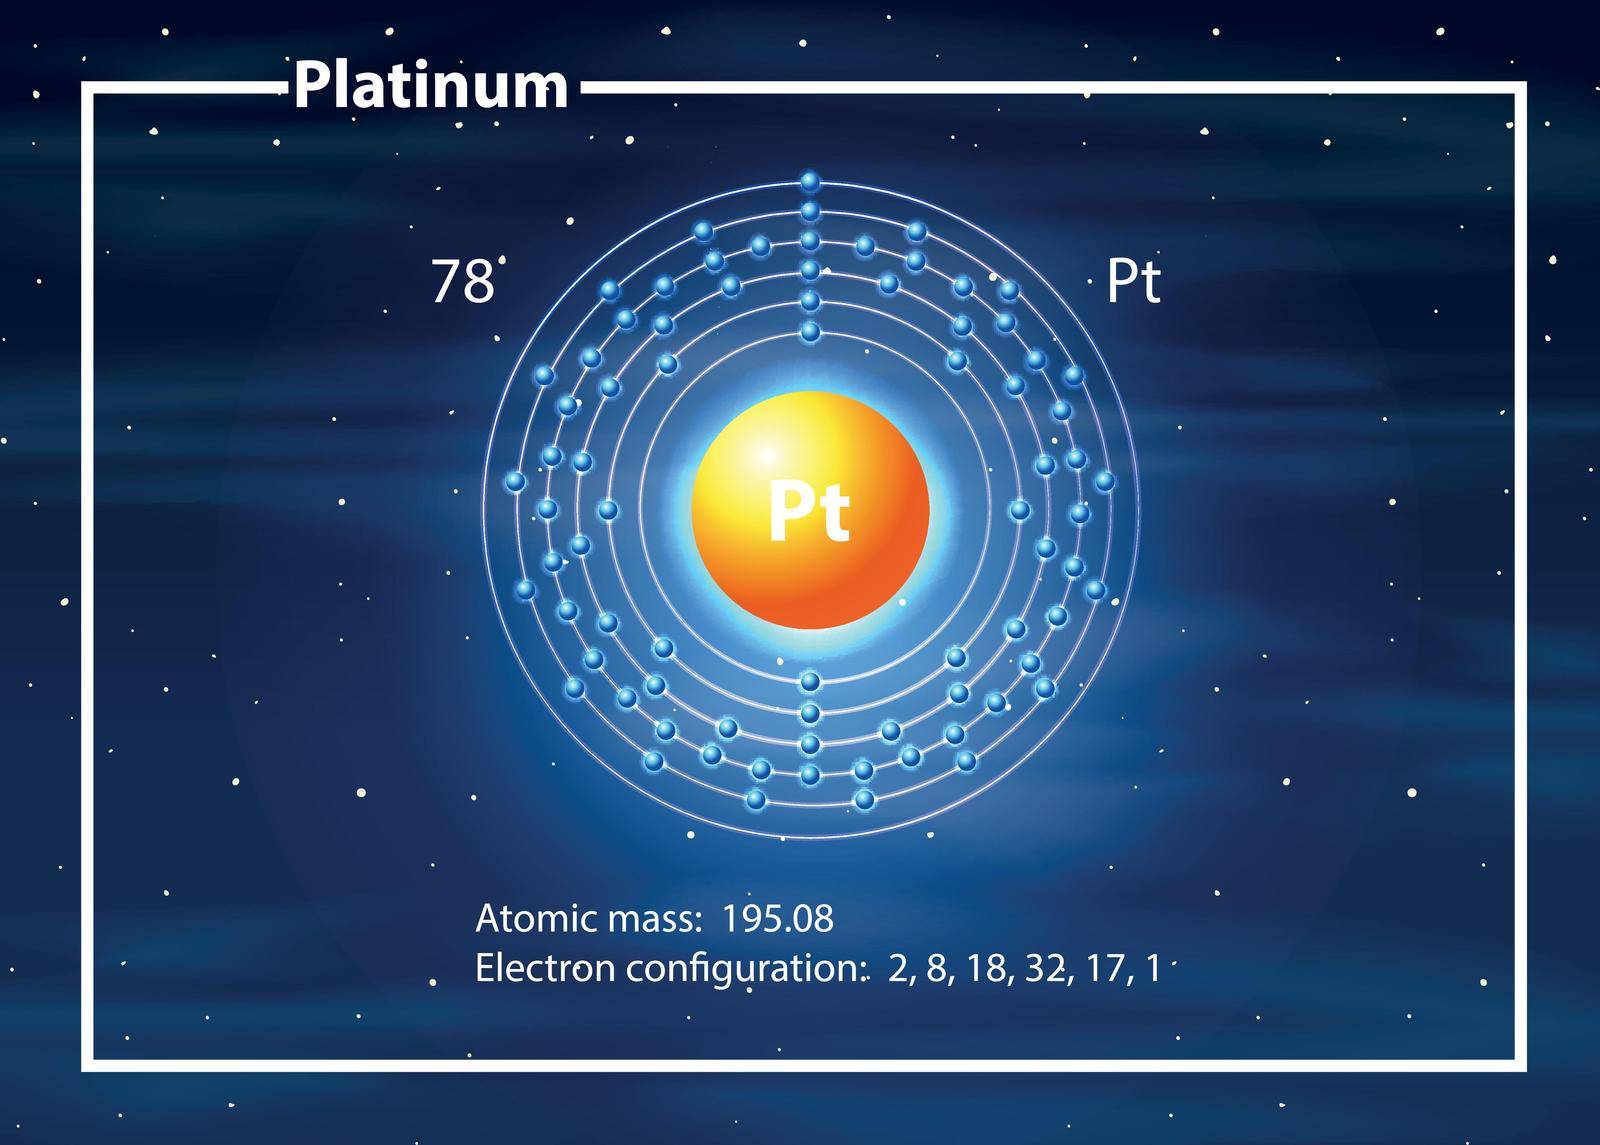 Platinum atom diagram concept illustration